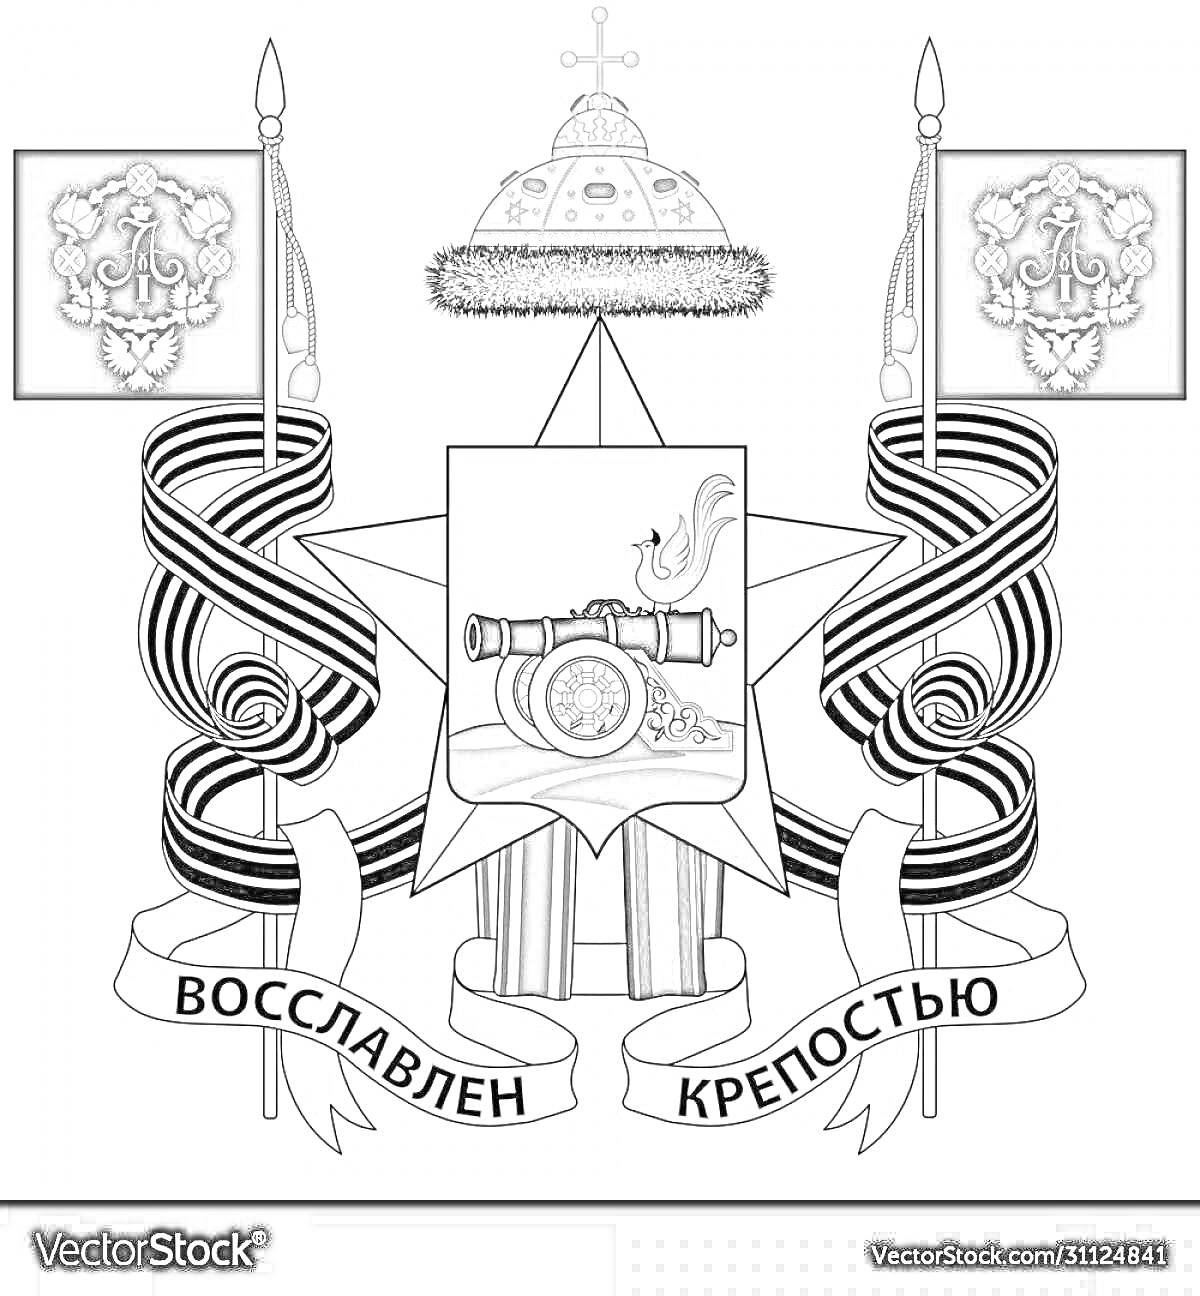 Герб Смоленска с пушкой, золотыми ядрами, орденом, ромашками, двумя королевскими флагами и лентой с надписью 